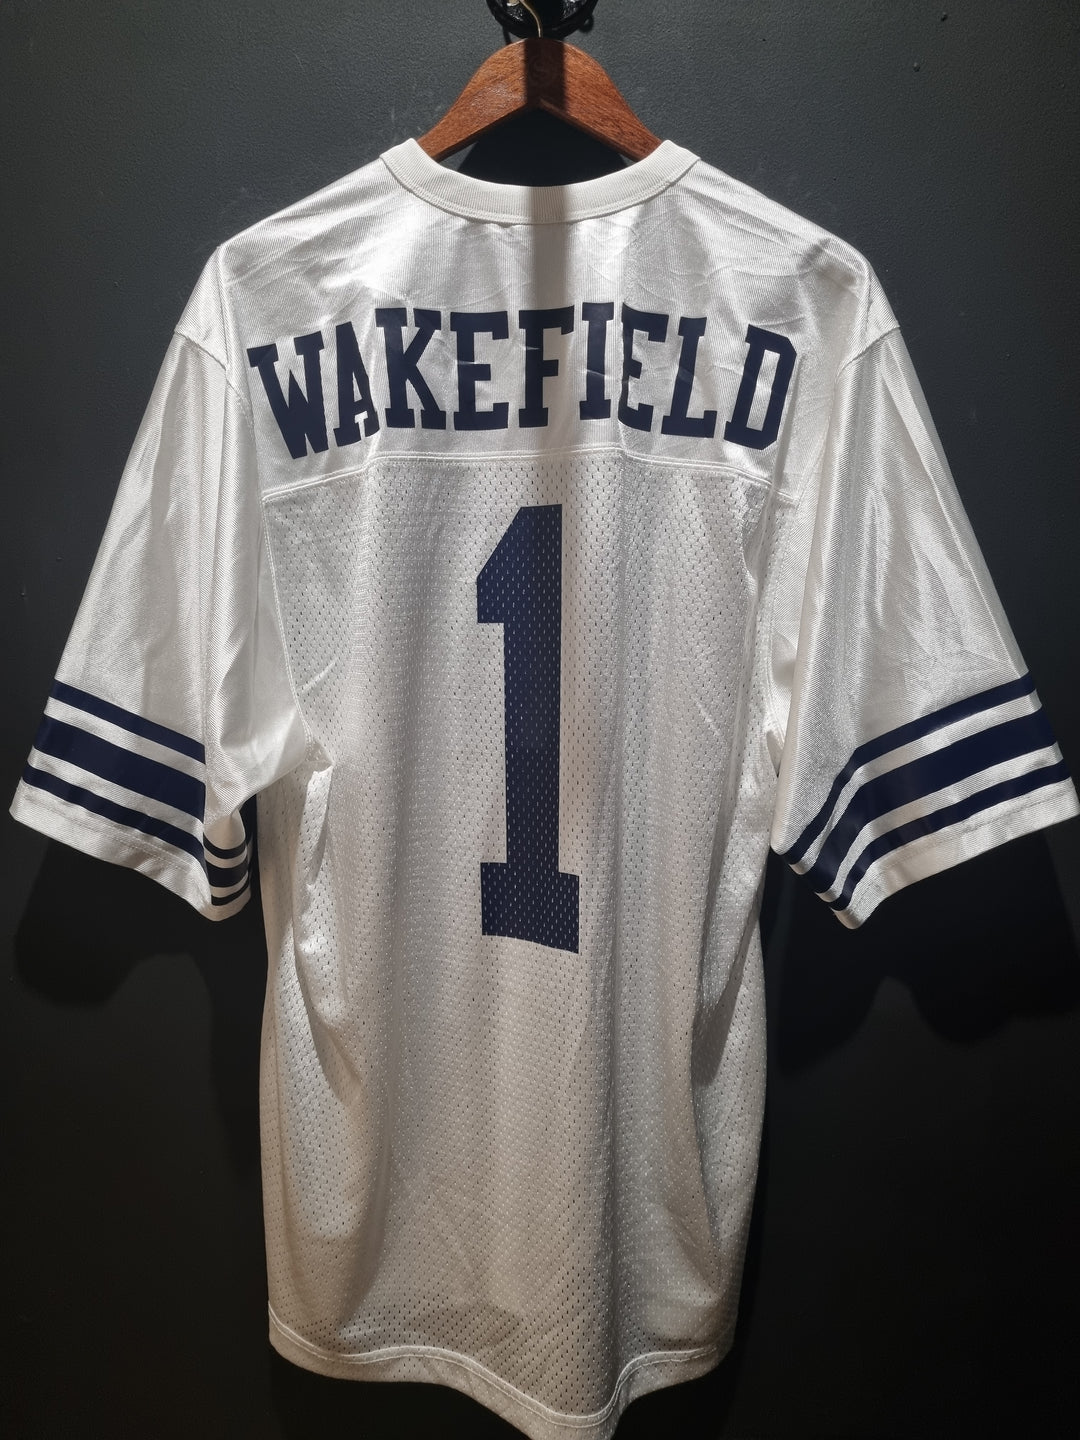 Yale University Wakefield Nike Large